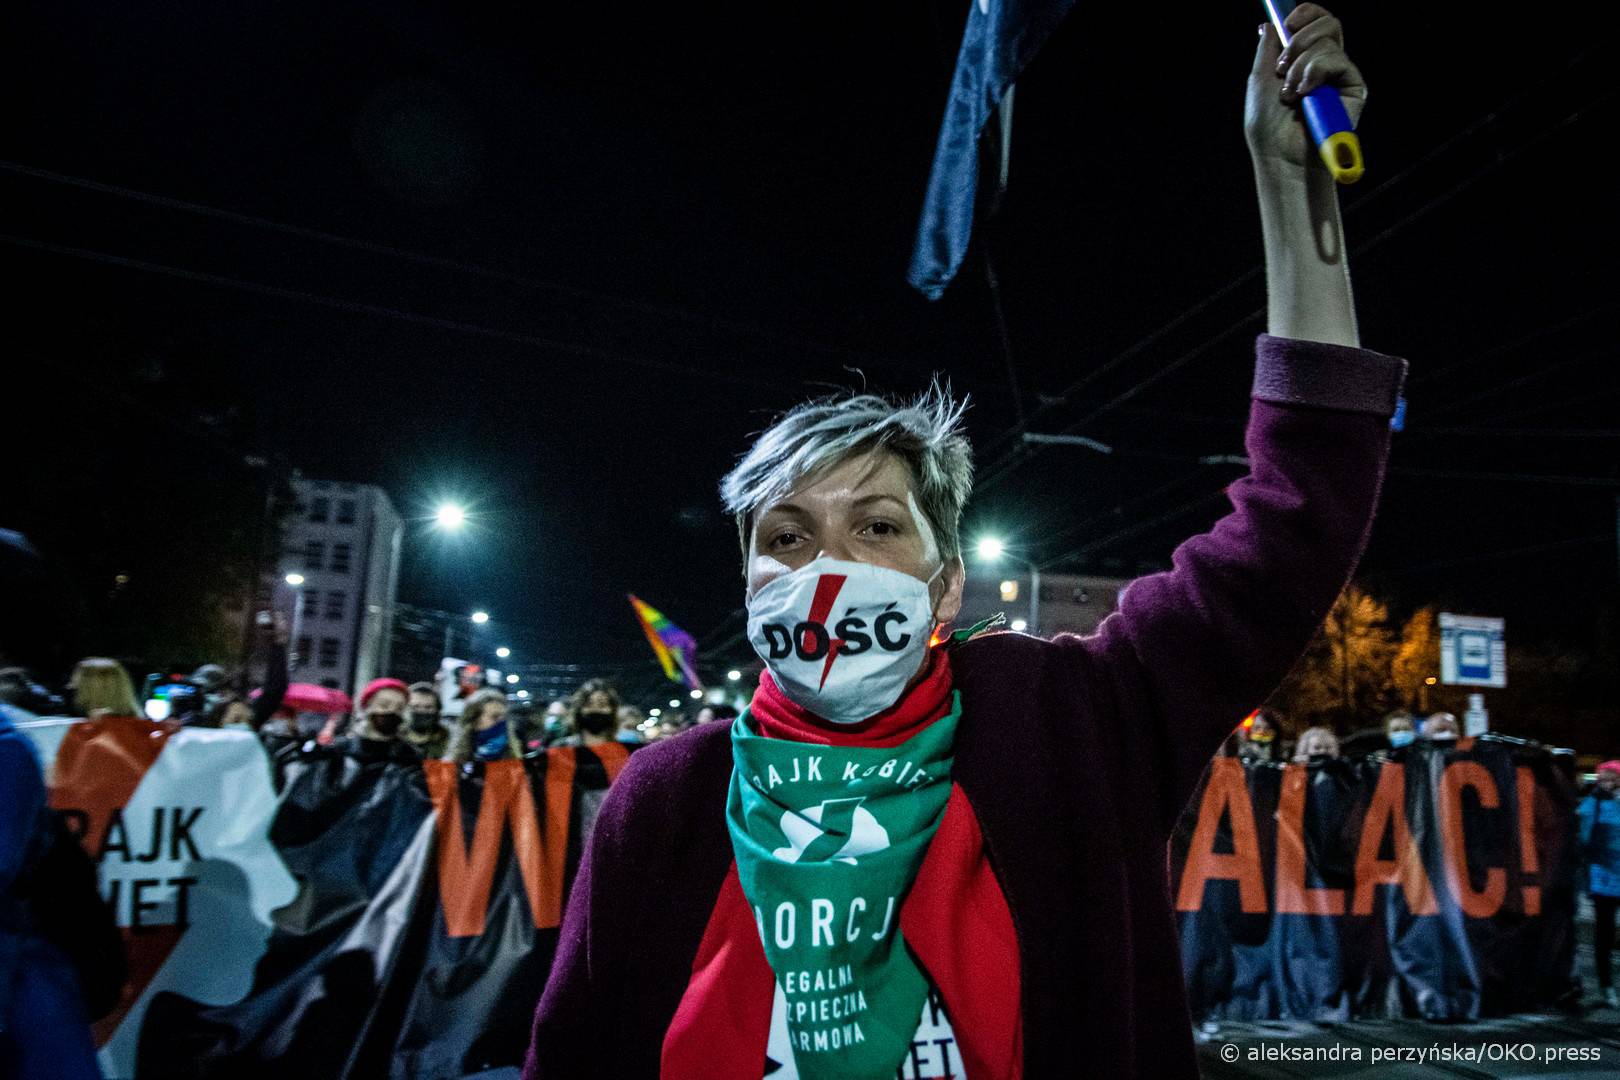 Warszawa, 22.10.2020. Protestujący wyrażali sprzeciw wobec barbarzyńskiego wyroku, który zakazuje aborcji w przypadku nieodwracalnego uszkodzenia lub ciężkiej choroby płodu